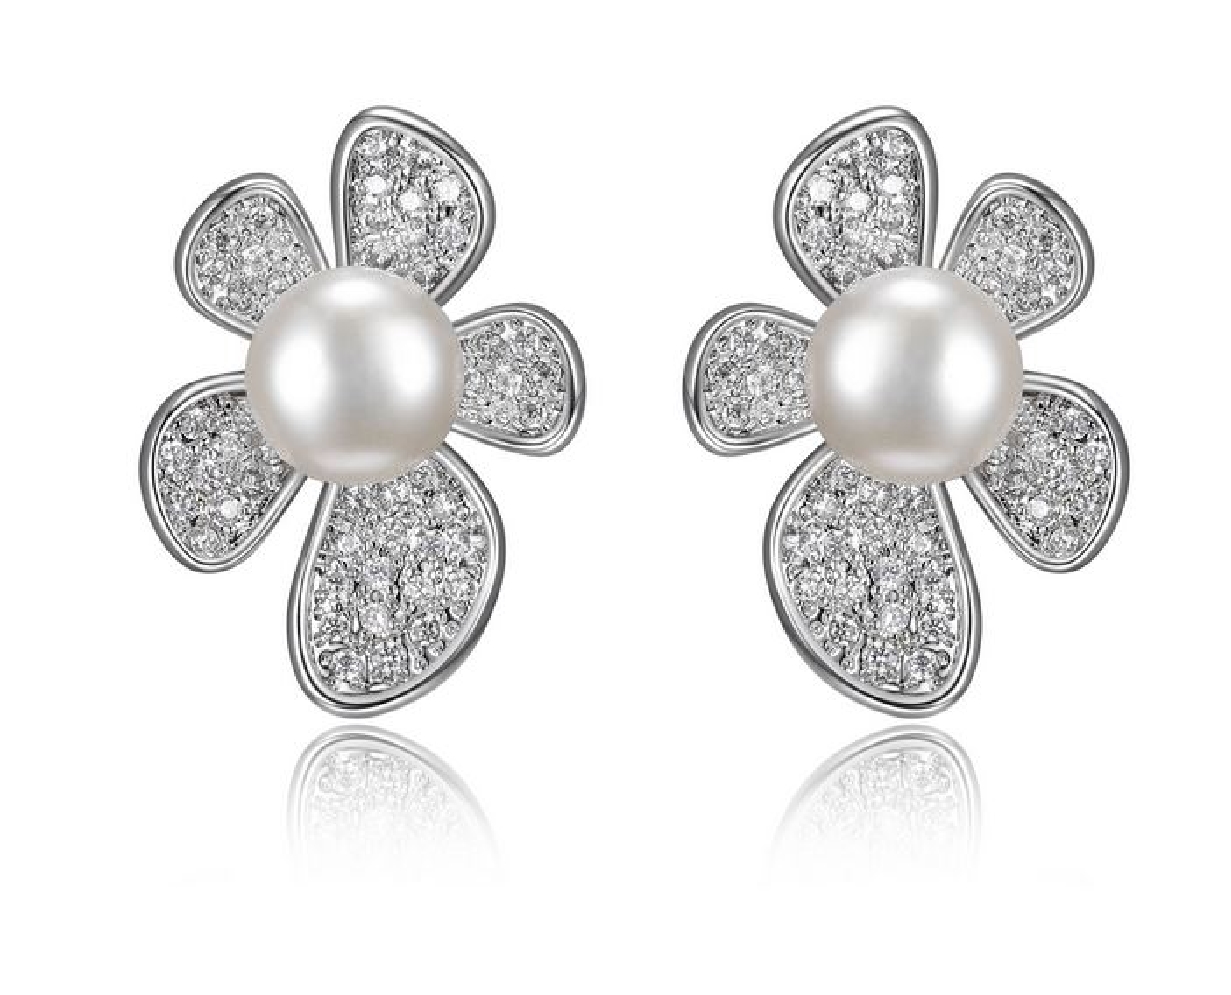 Reign Diamondlite CZ
White Flower Earrings
St...